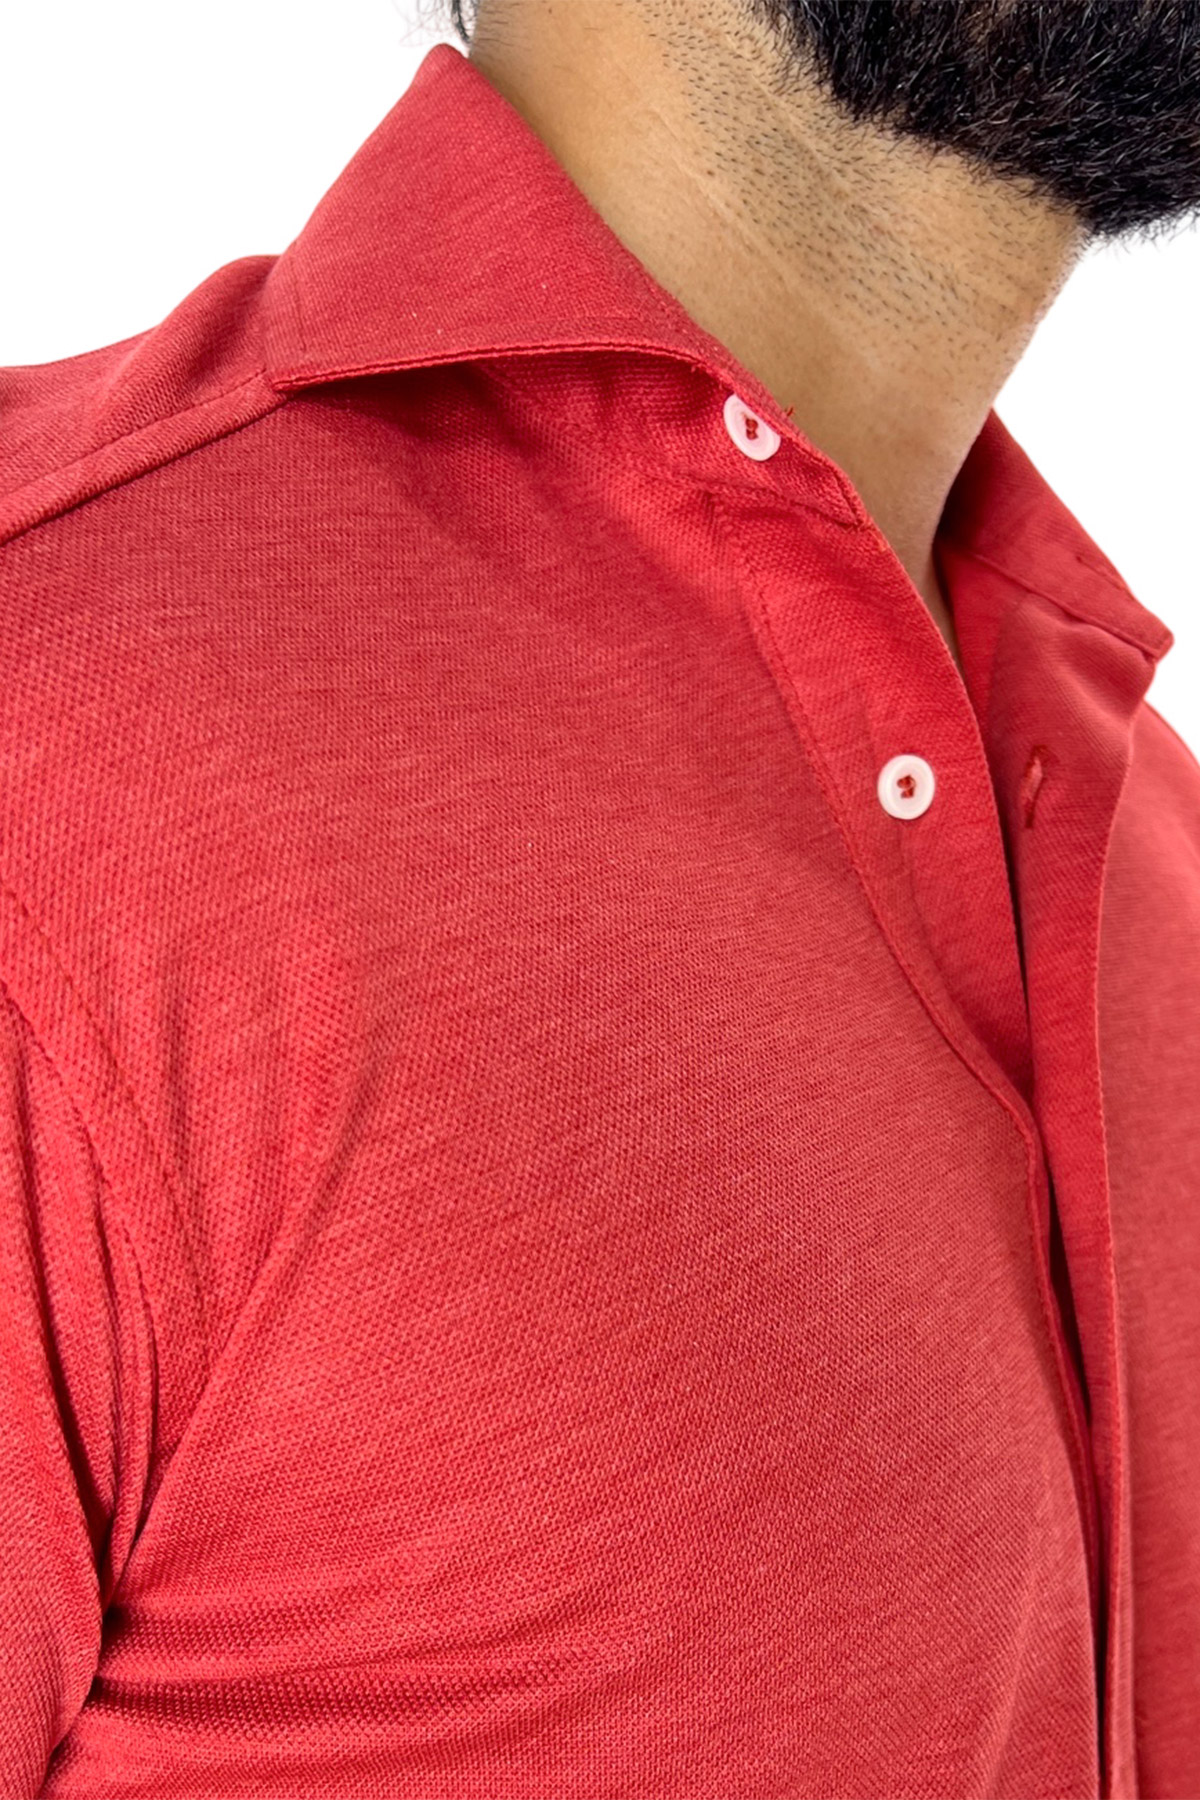 Polo camicia da uomo rossa trattamento stone wash manica lunga in piquet cotone 100% Canclini